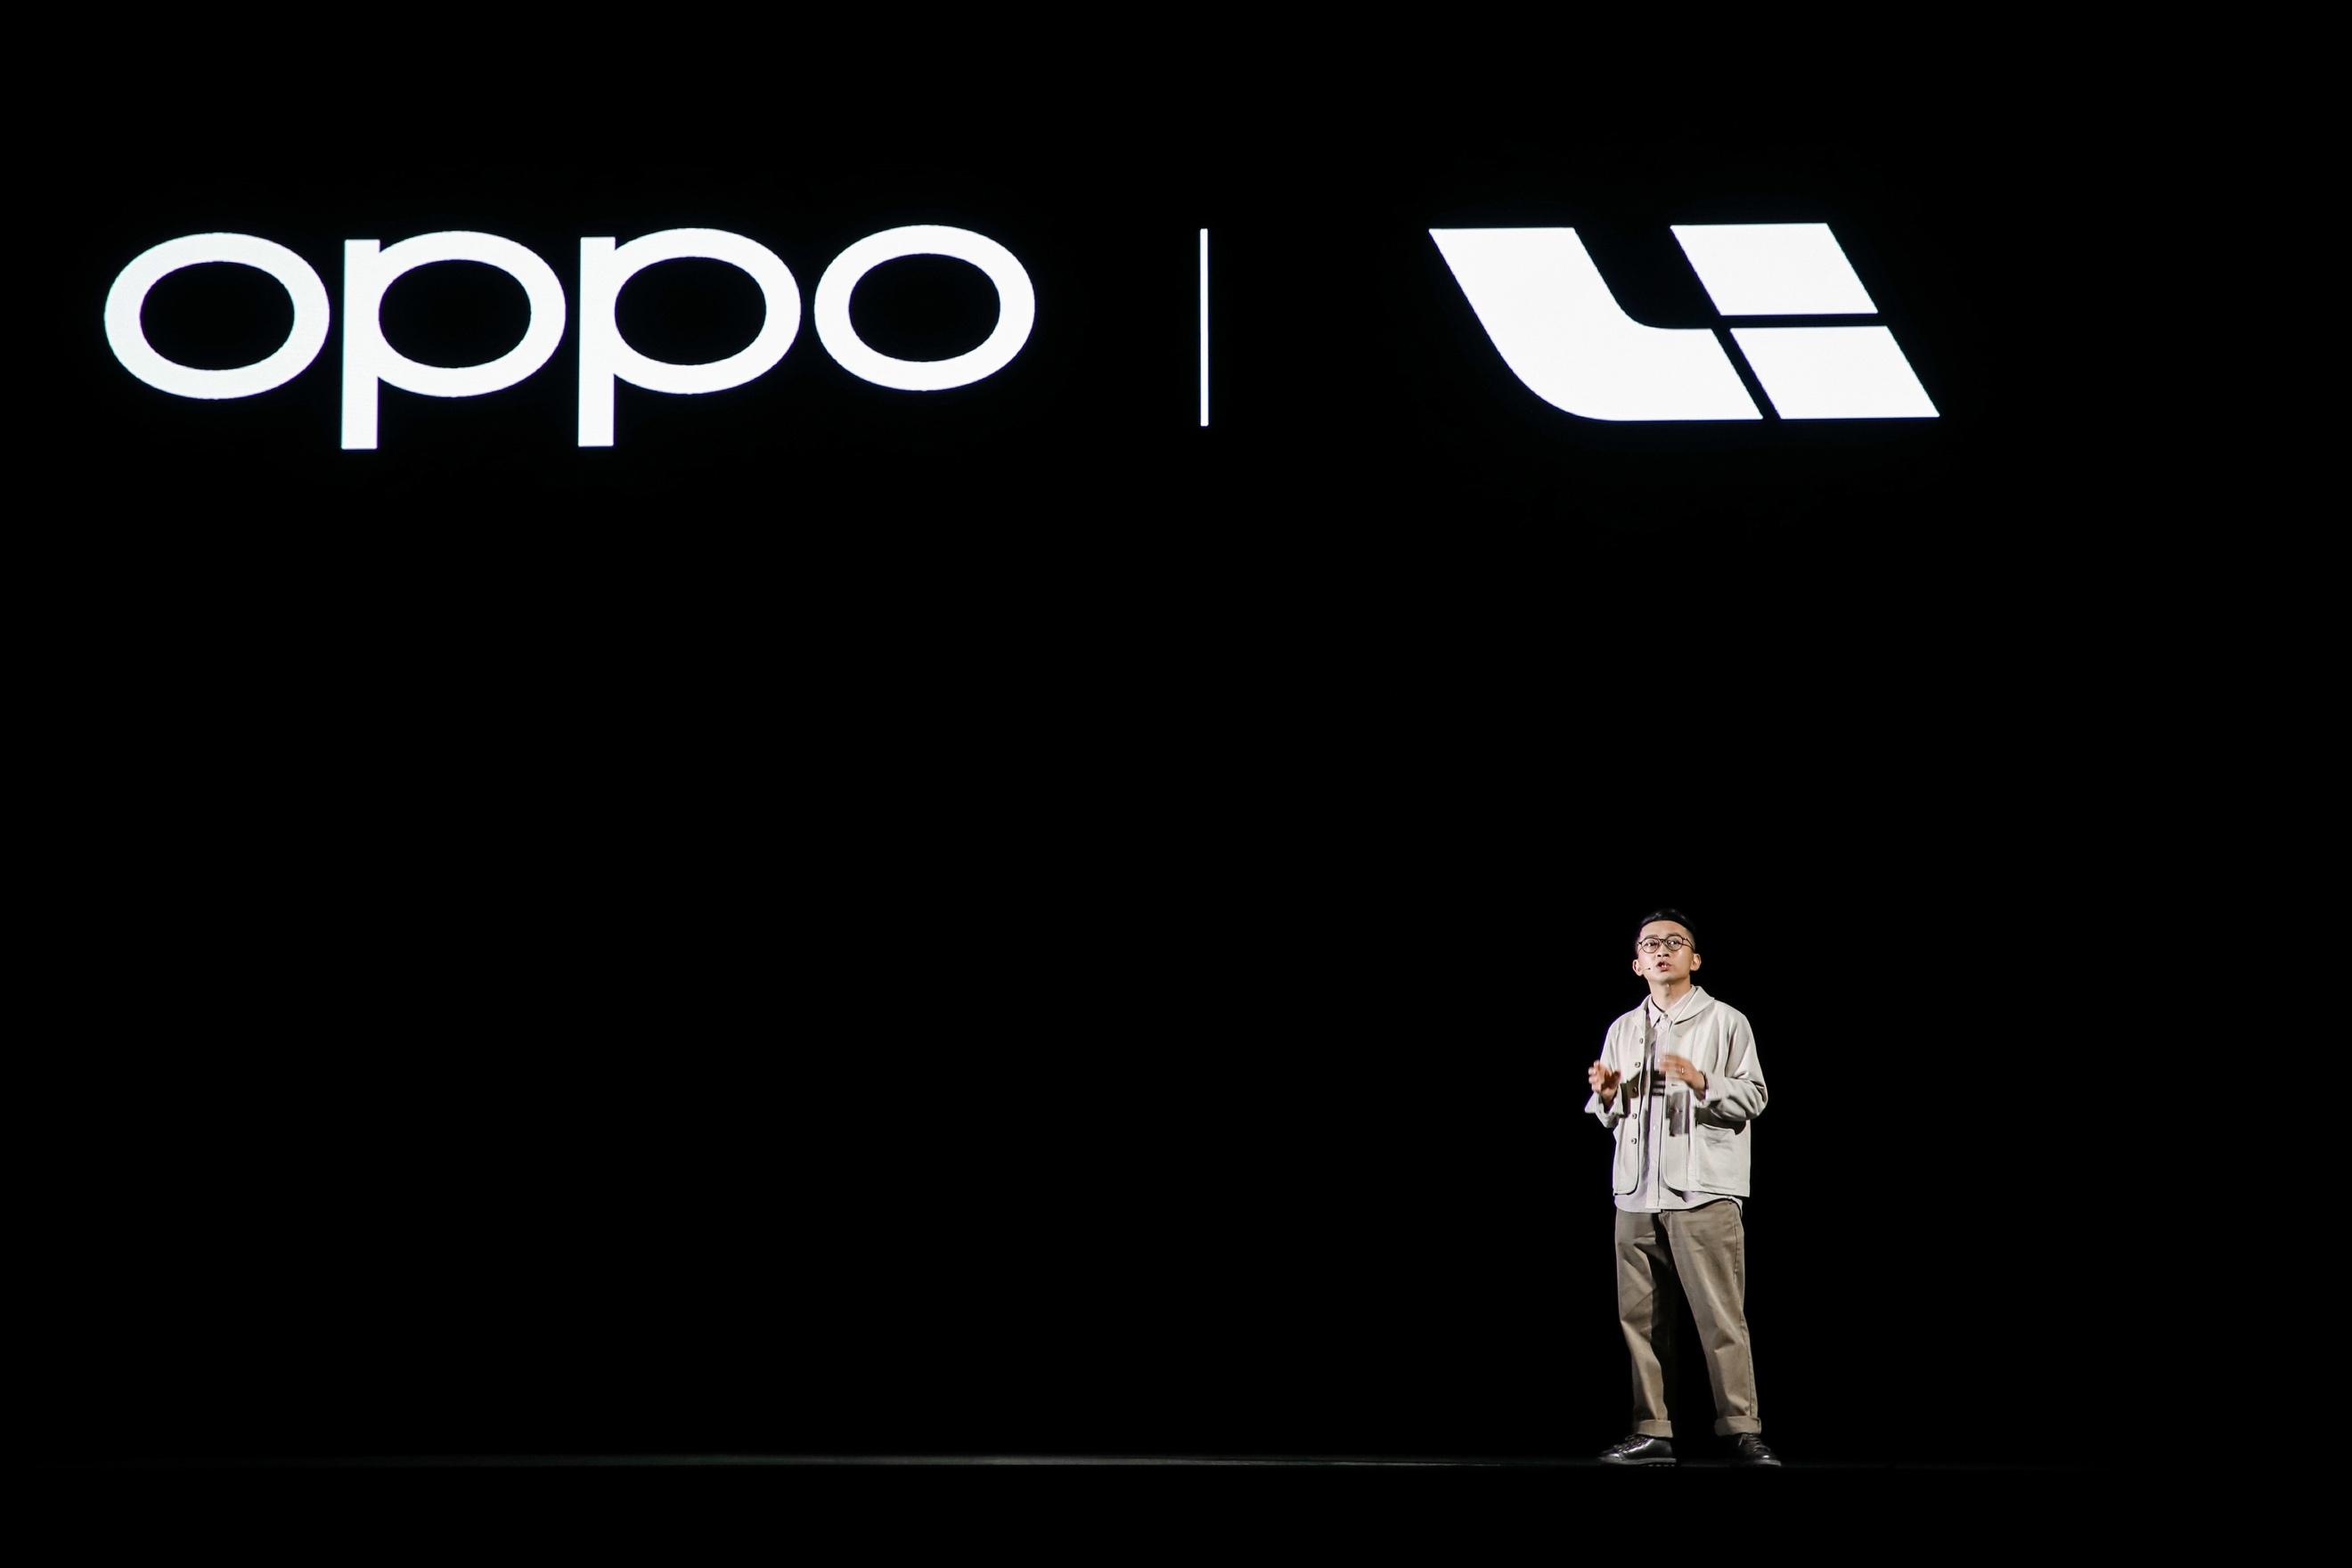 OPPO发布色彩影像旗舰Find X3系列 加速高端市场破局